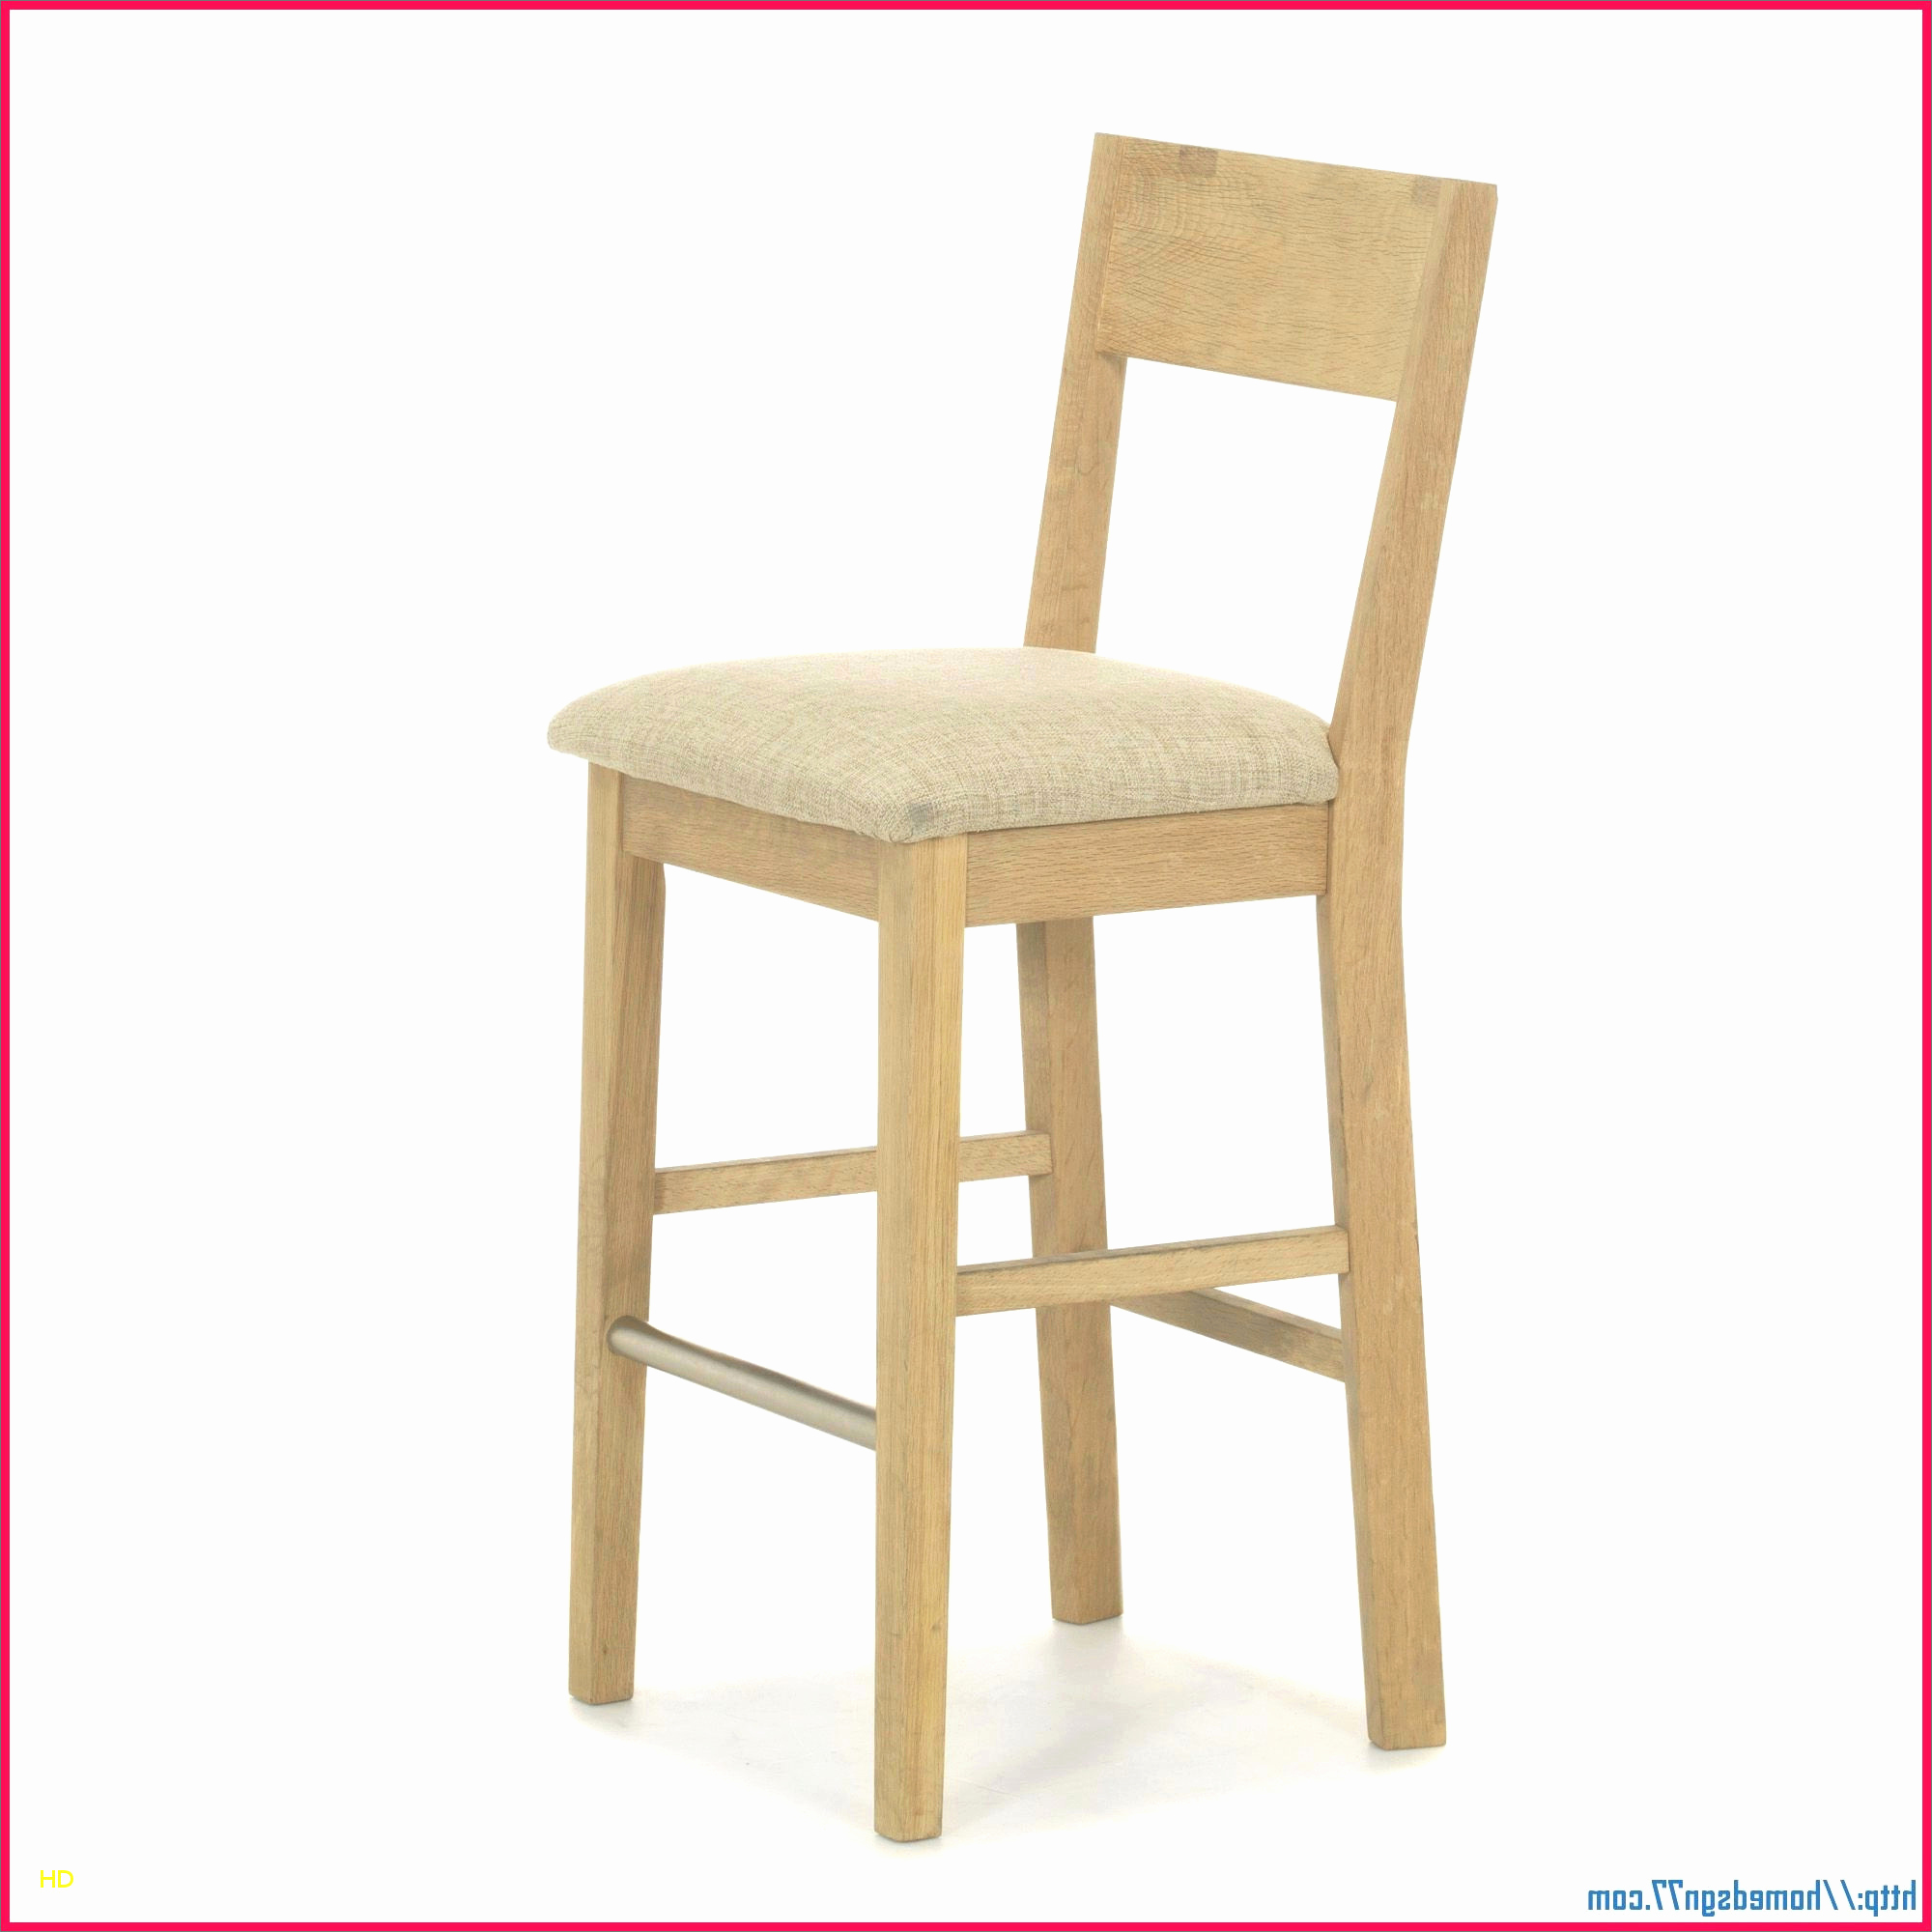 chaise en bois pas cher inspirant chaise bar pas cher unique chaise beau cher 0d pas bar de de chaise en bois pas cher